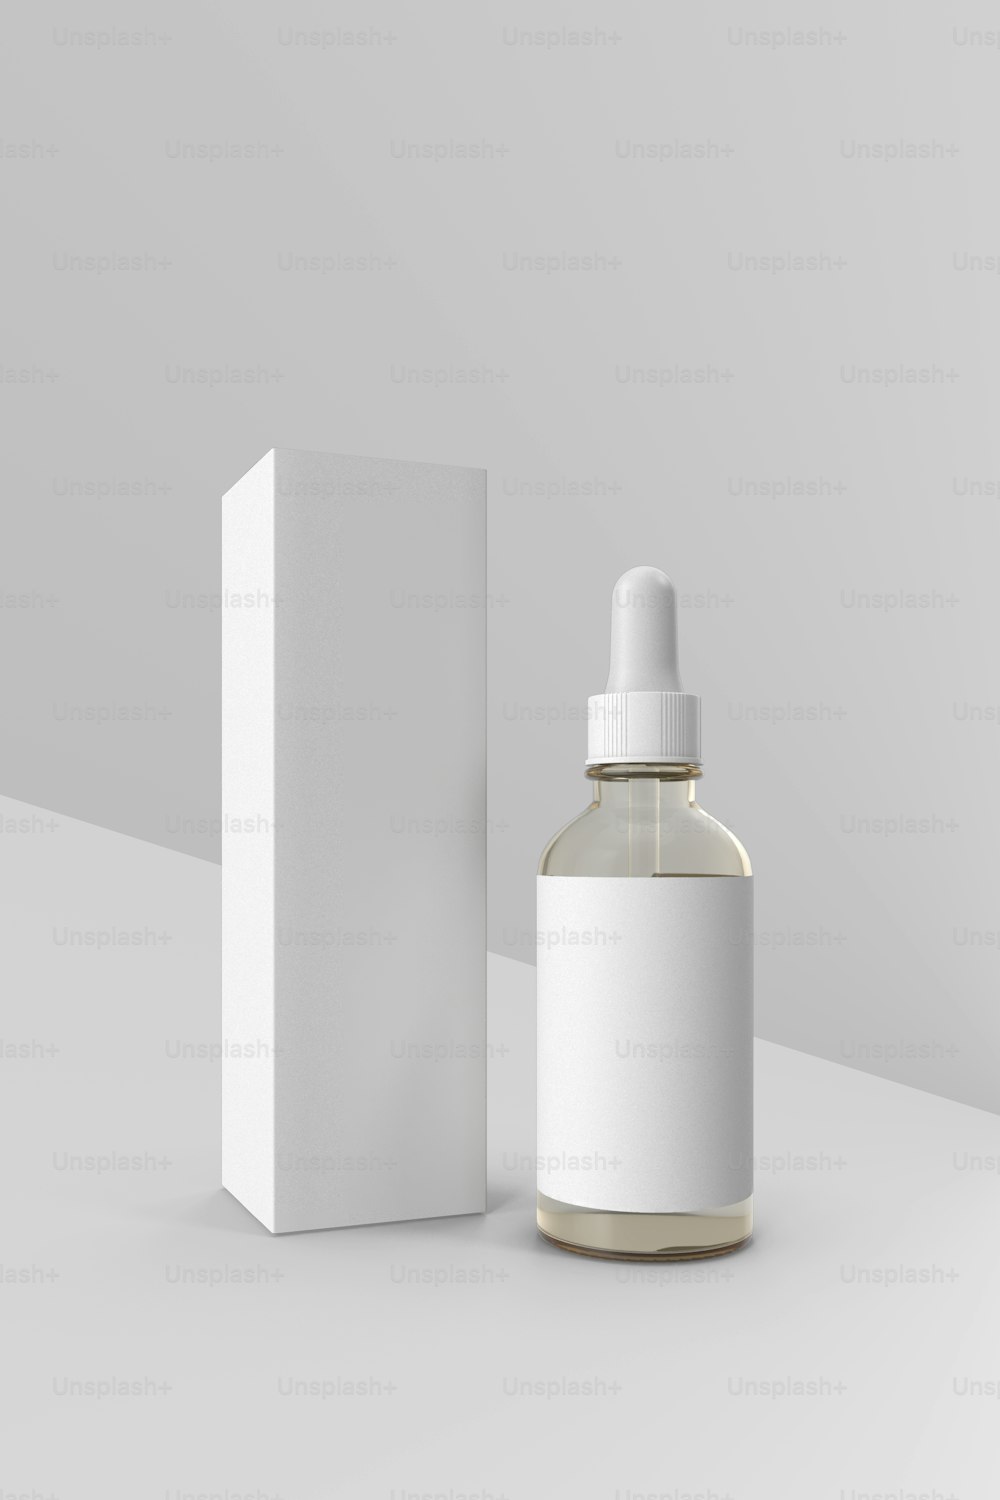 흰색 상자 옆에 있는 액체 한 병